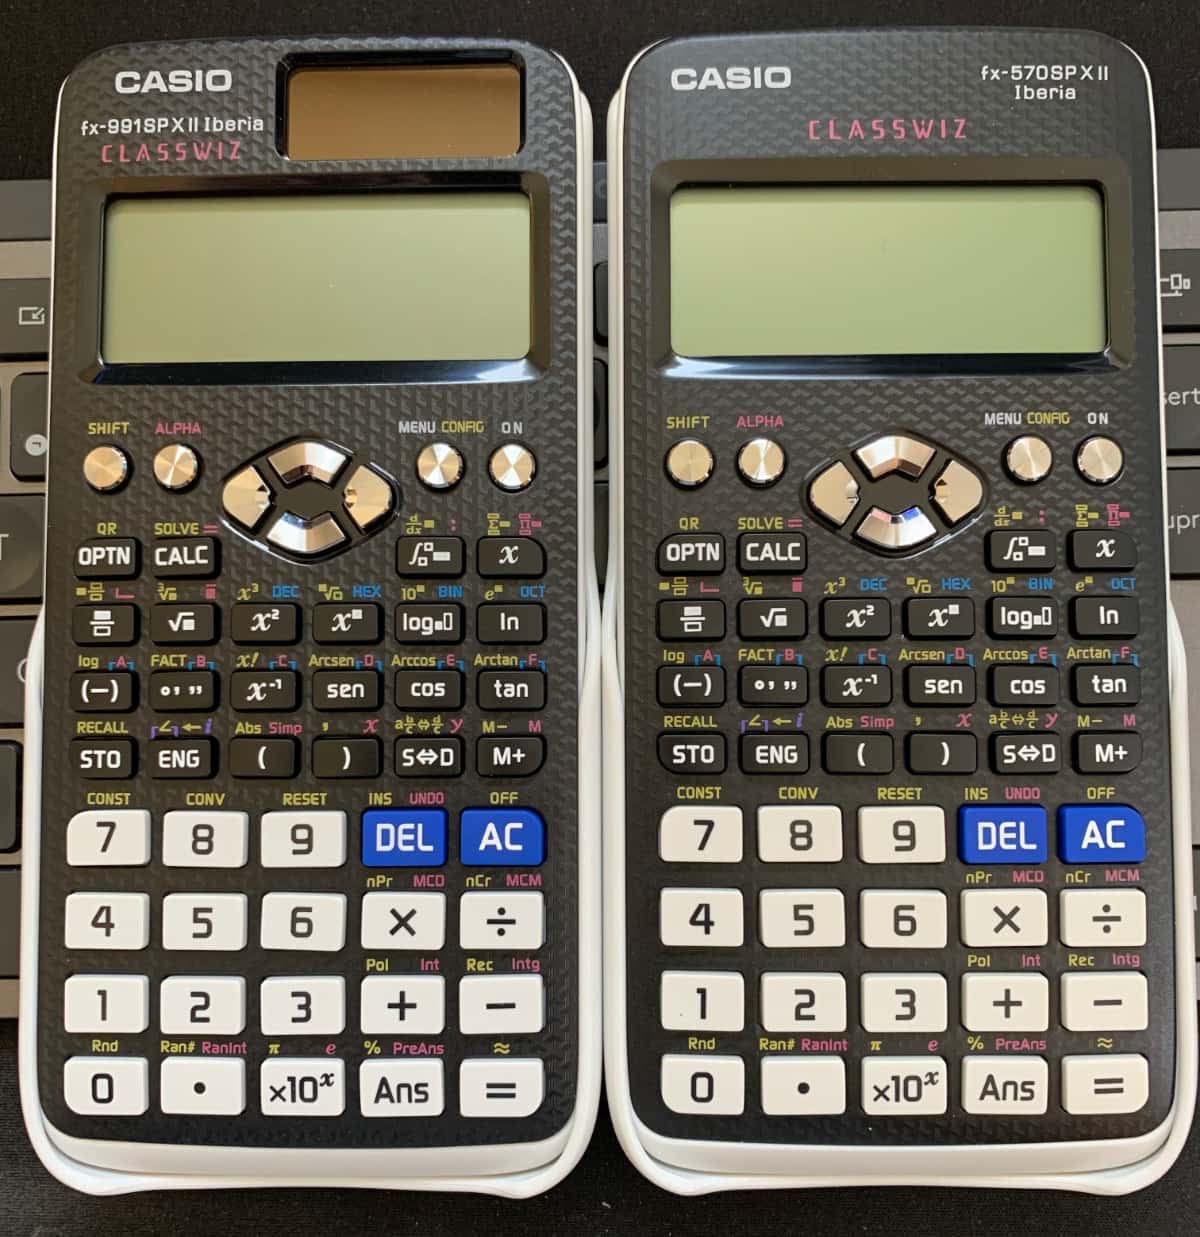 Comparando dos calculadoras científicas: Casio FX-991SP X II Iberia vs Casio FX-570SP X II Iberia